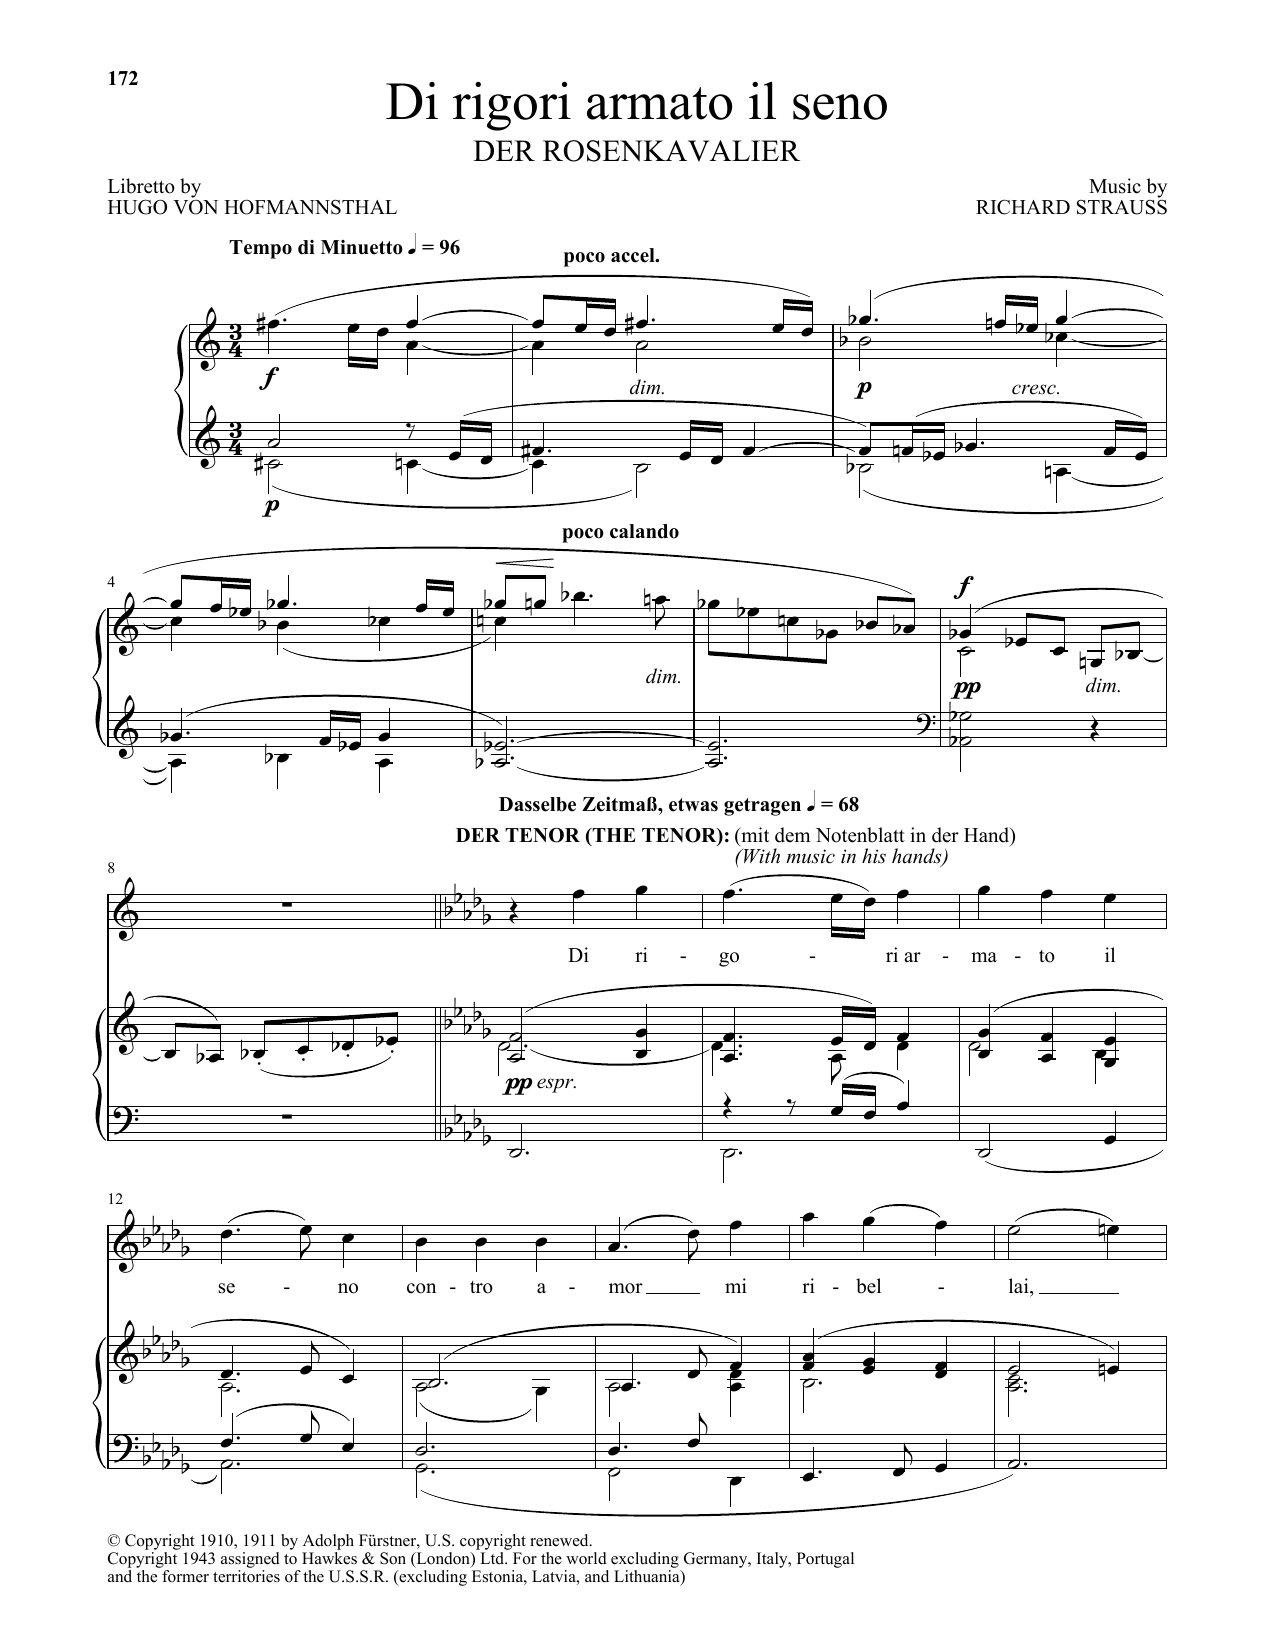 Richard Strauss Di Rigori Armato Il Seno Sheet Music Notes & Chords for Piano & Vocal - Download or Print PDF